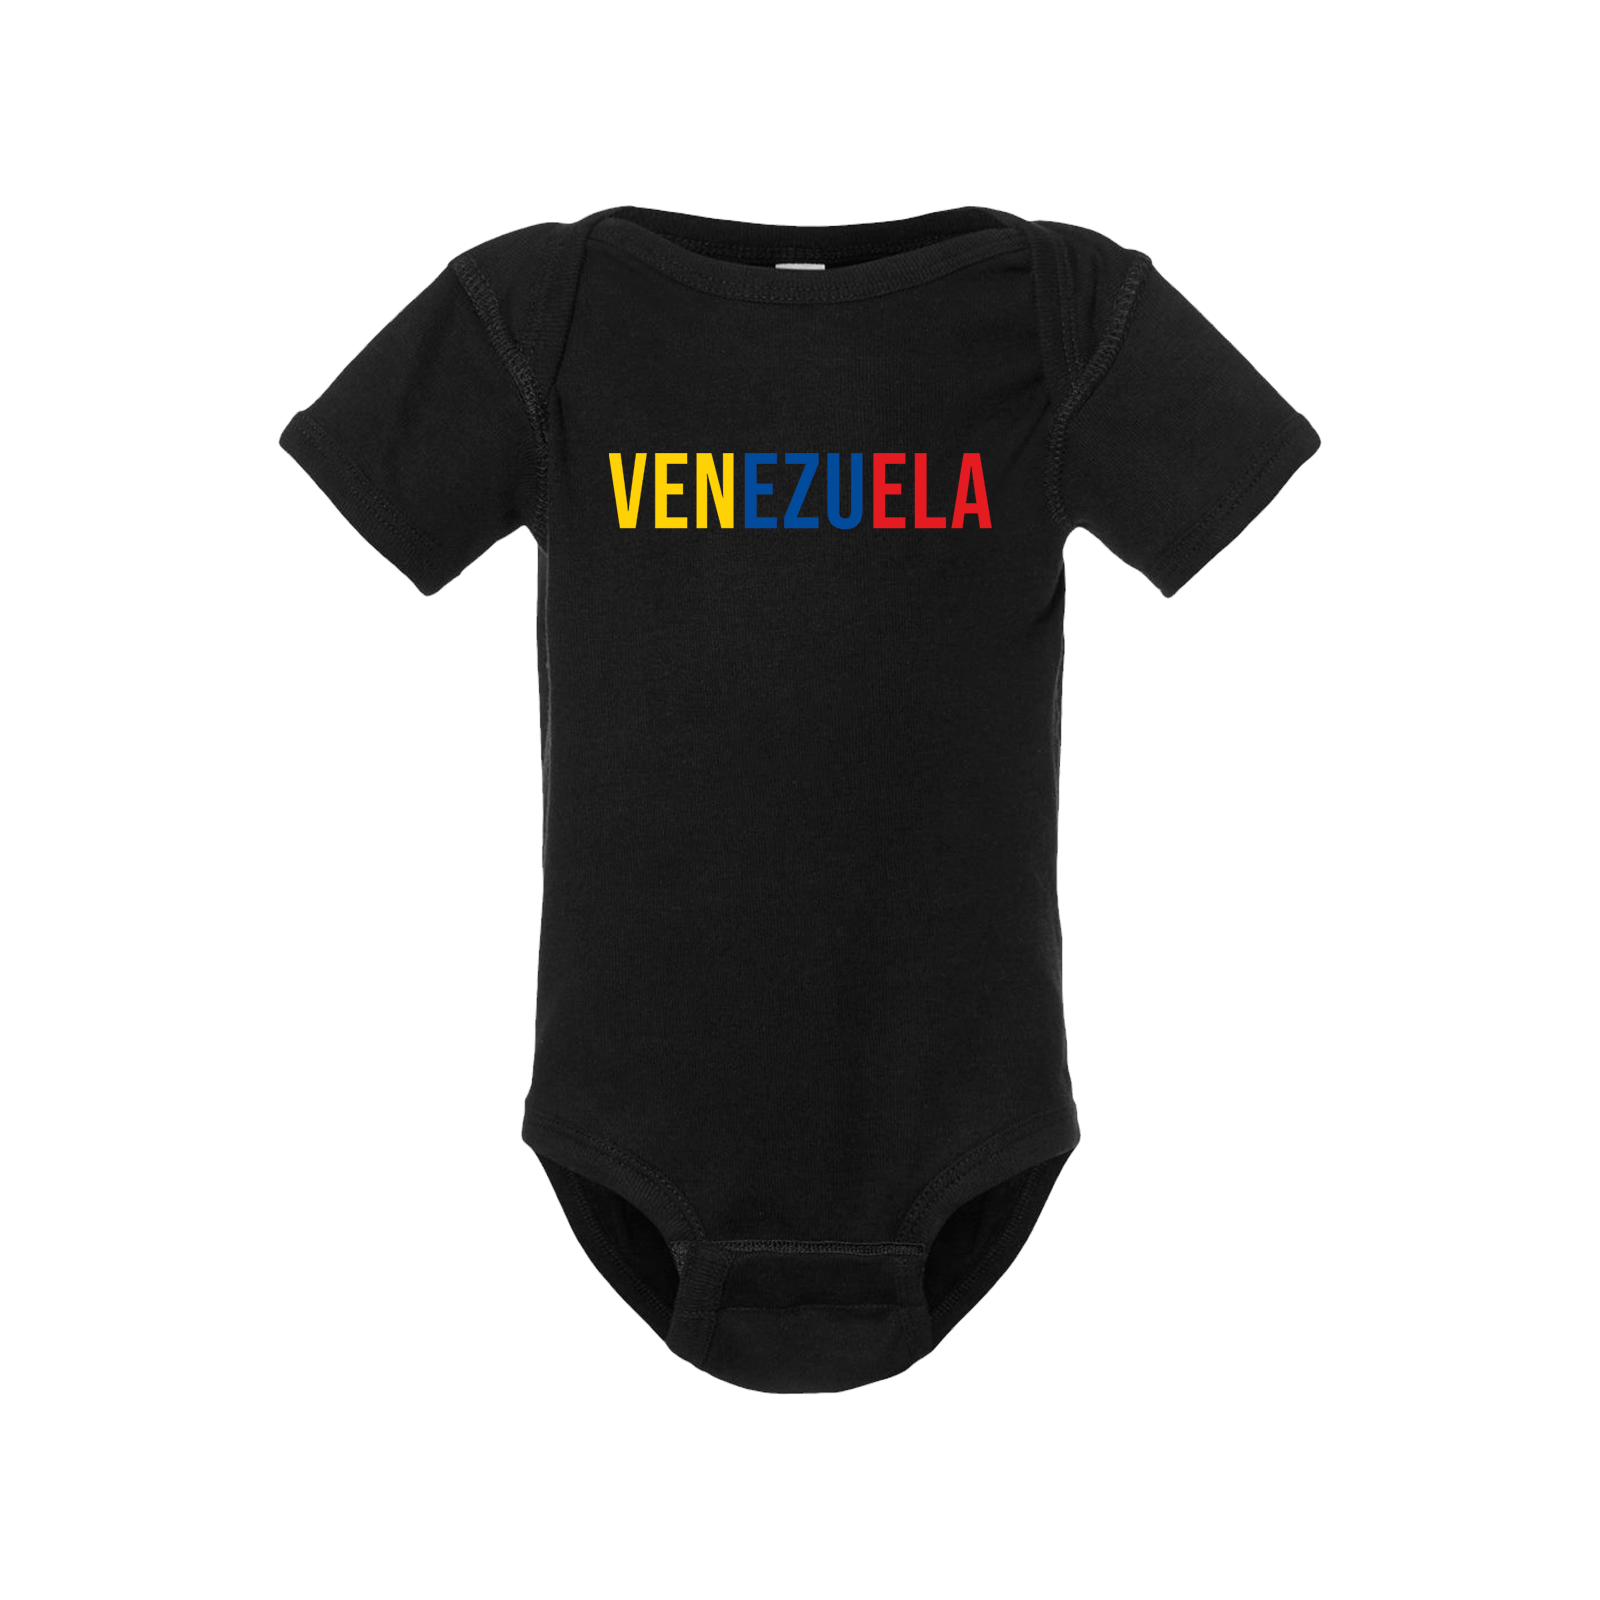 Venezuela Short Sleeve Onesie - Babies & Toddlers